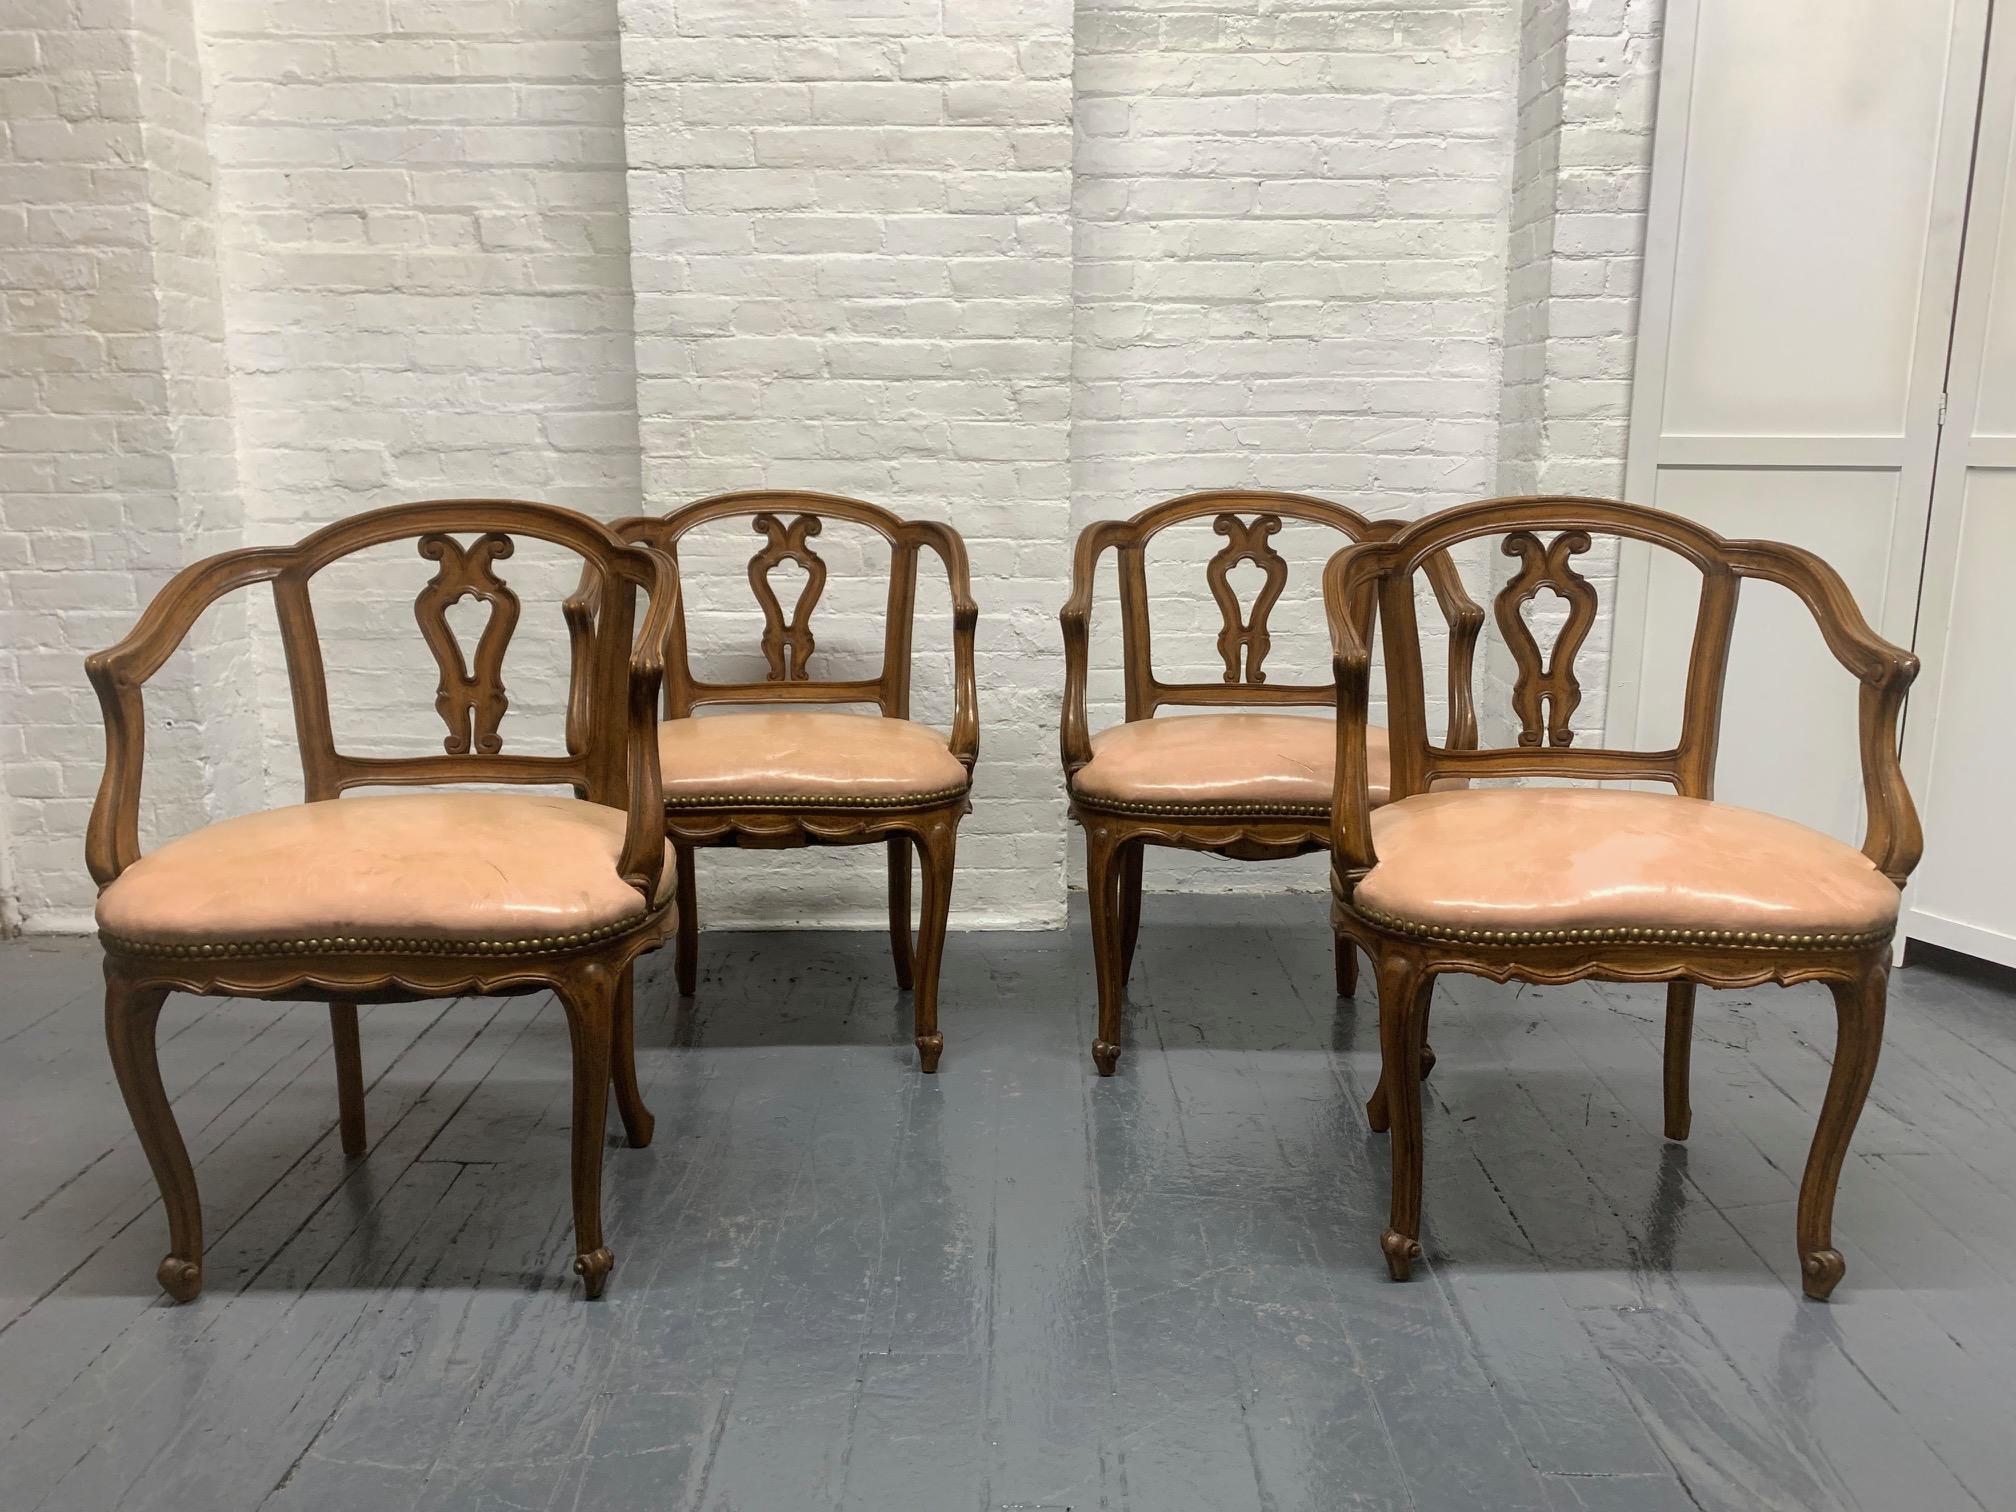 Ensemble de quatre chaises de salle à manger anciennes. Les chaises ont un cadre en noyer massif et des sièges en cuir d'origine. Les chaises sont suffisamment basses pour accueillir des chaises de petit-déjeuner. Style Louis XV.